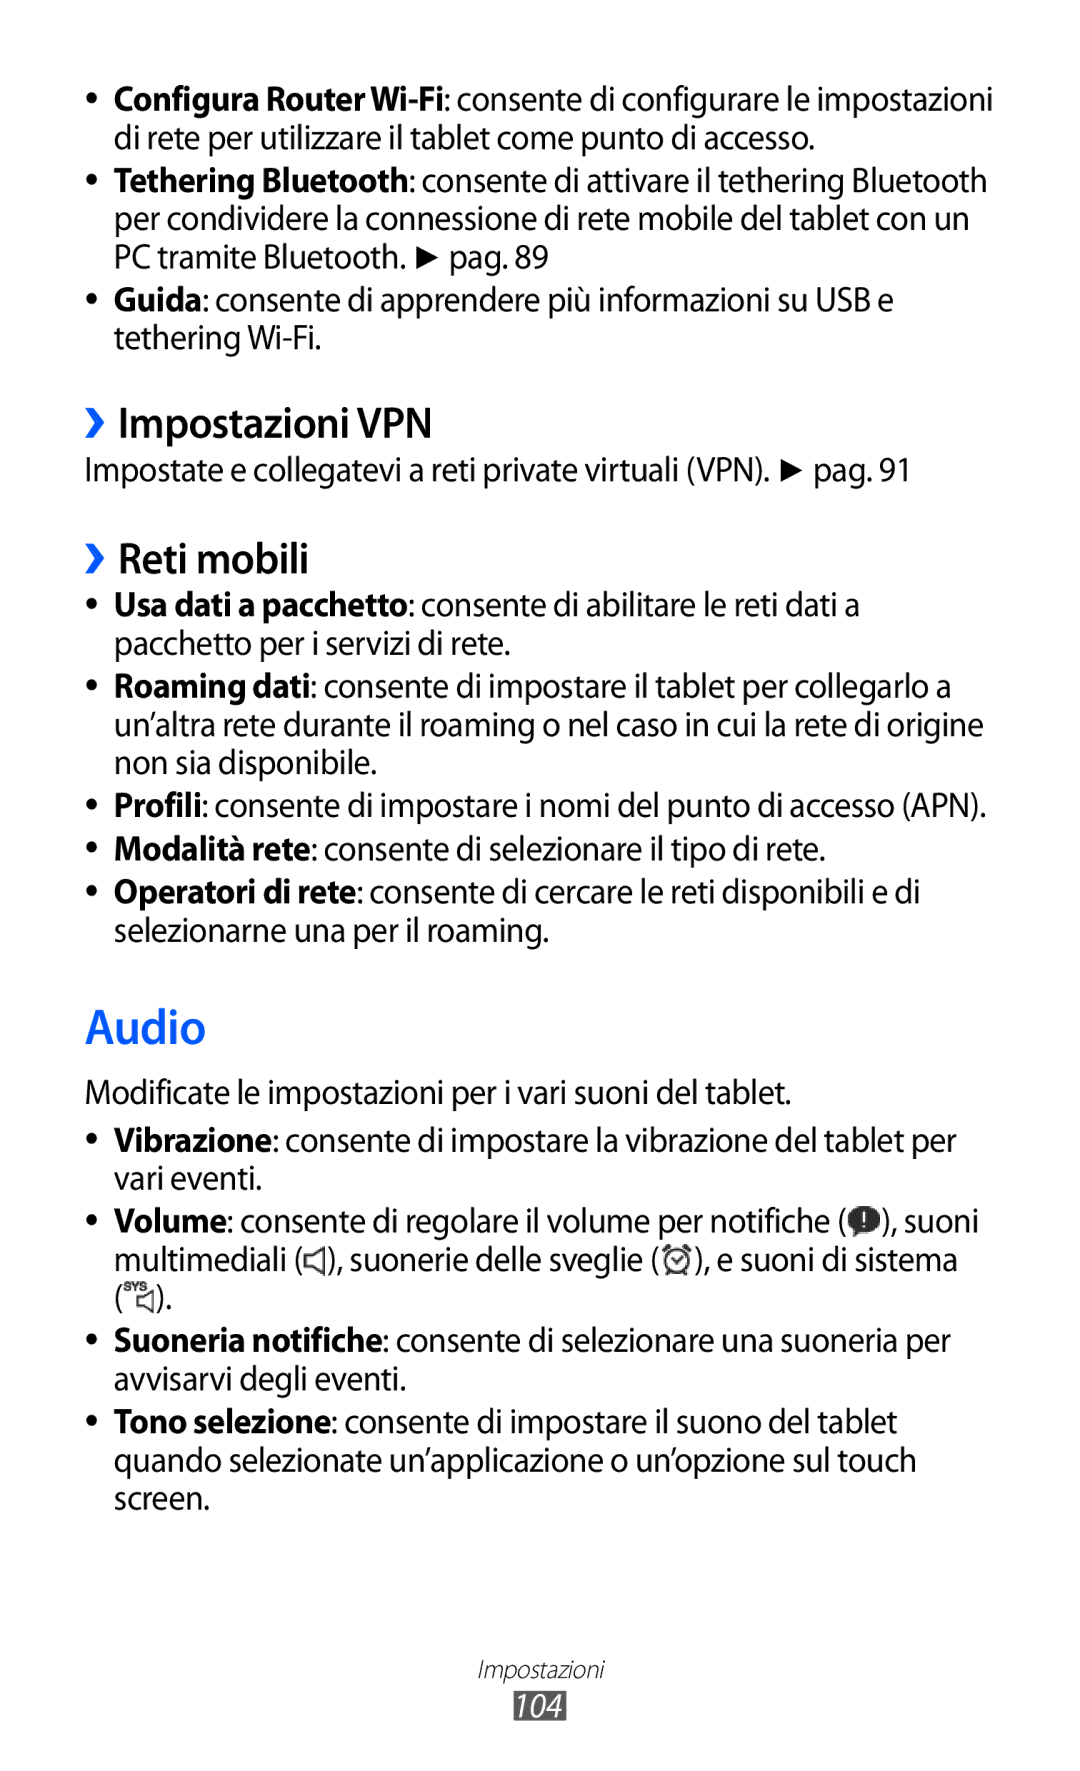 Samsung GT-P7300UWATUR Audio, ››Impostazioni VPN, ››Reti mobili, Impostate e collegatevi a reti private virtuali VPN. pag 